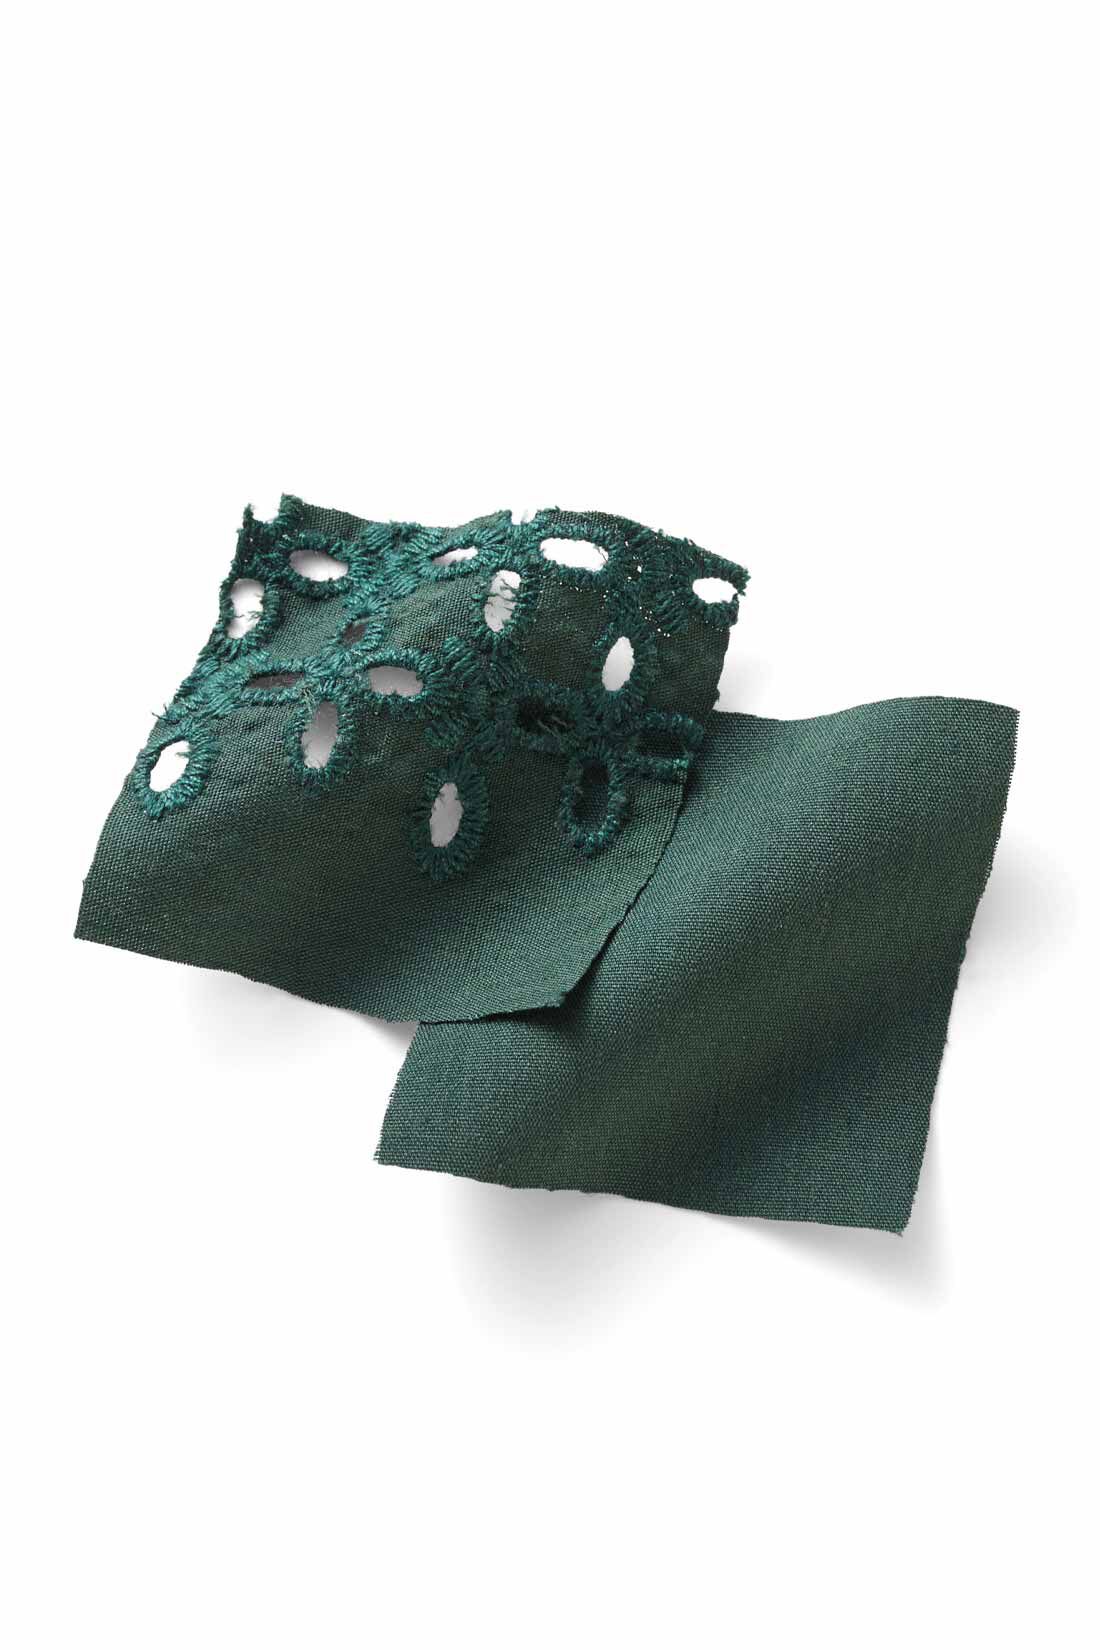 IEDIT|IEDIT[イディット]　アンティーク風デザインの袖レースブラウス〈グリーン〉|張り感のある布はく素材とレトロな表情のエンブロイダリーレースはしわが気になりにくいナチュラルな素材感。